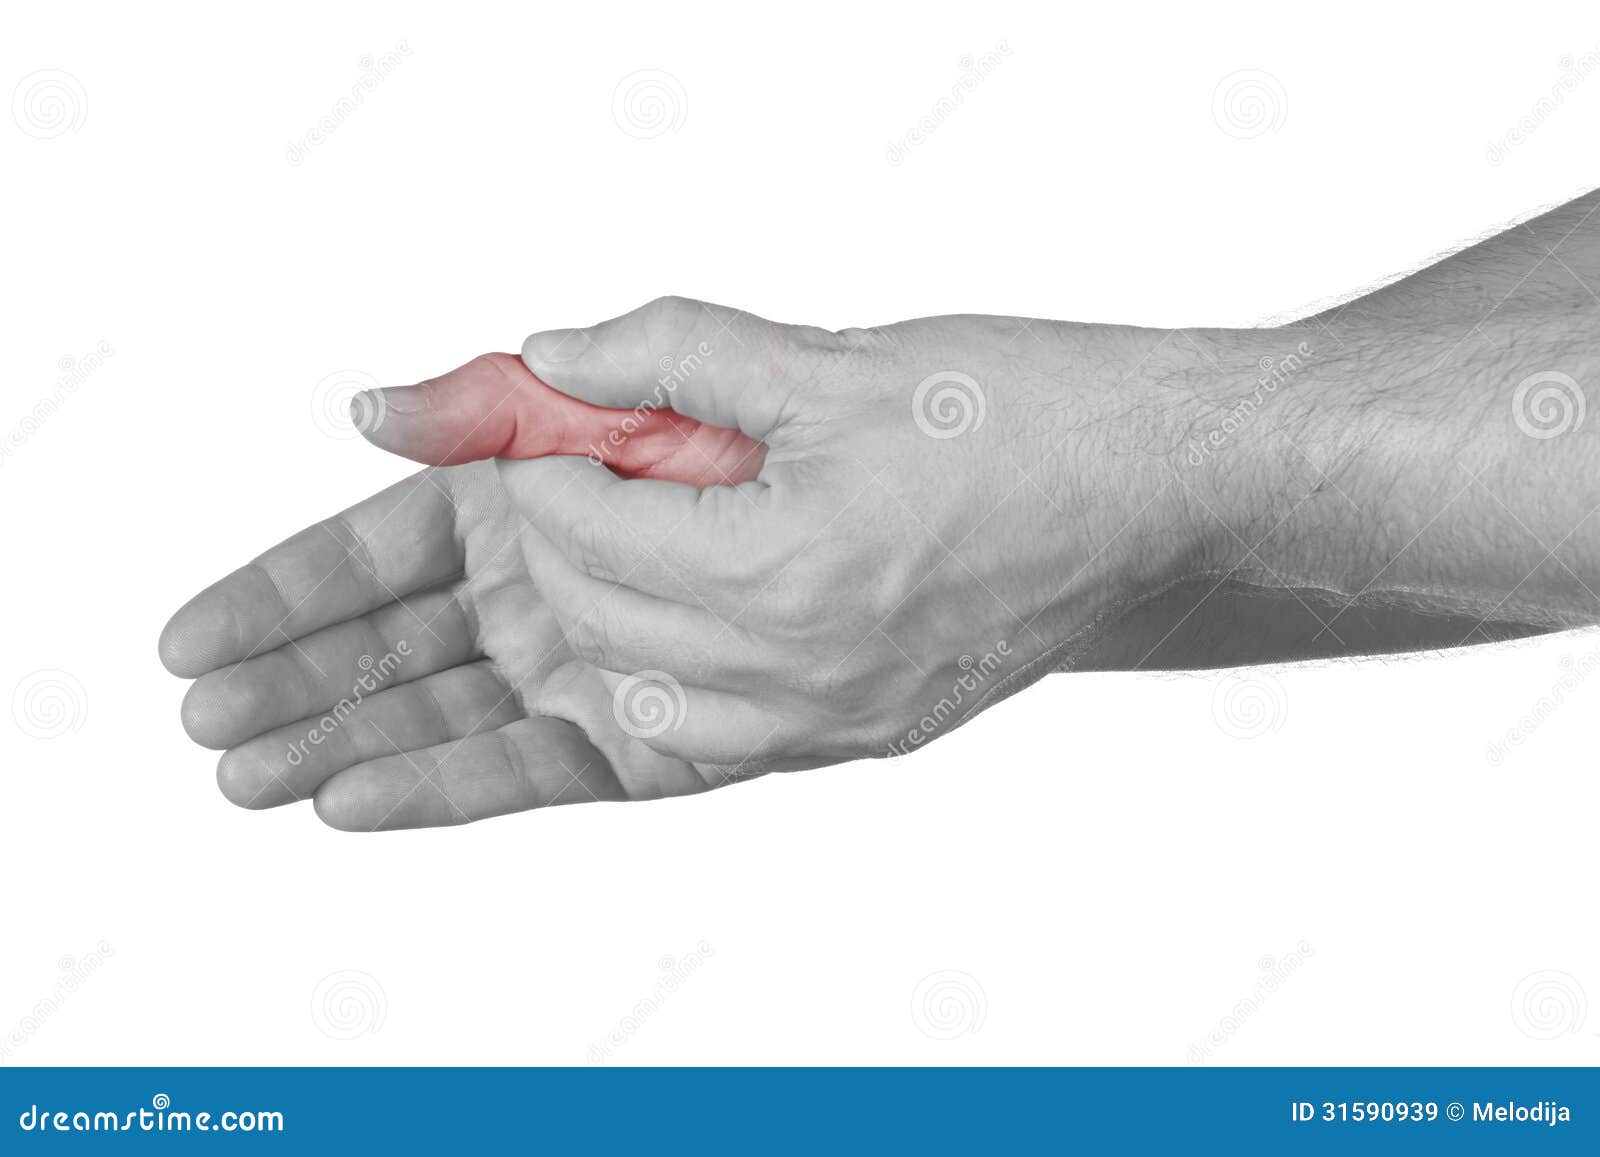 Сильно болят суставы рук. Сустав большого пальца руки. Боль в суставе большого пальца руки. Болит сустав большого пальца на руке. Болит сустав Болшево пальца на руке.